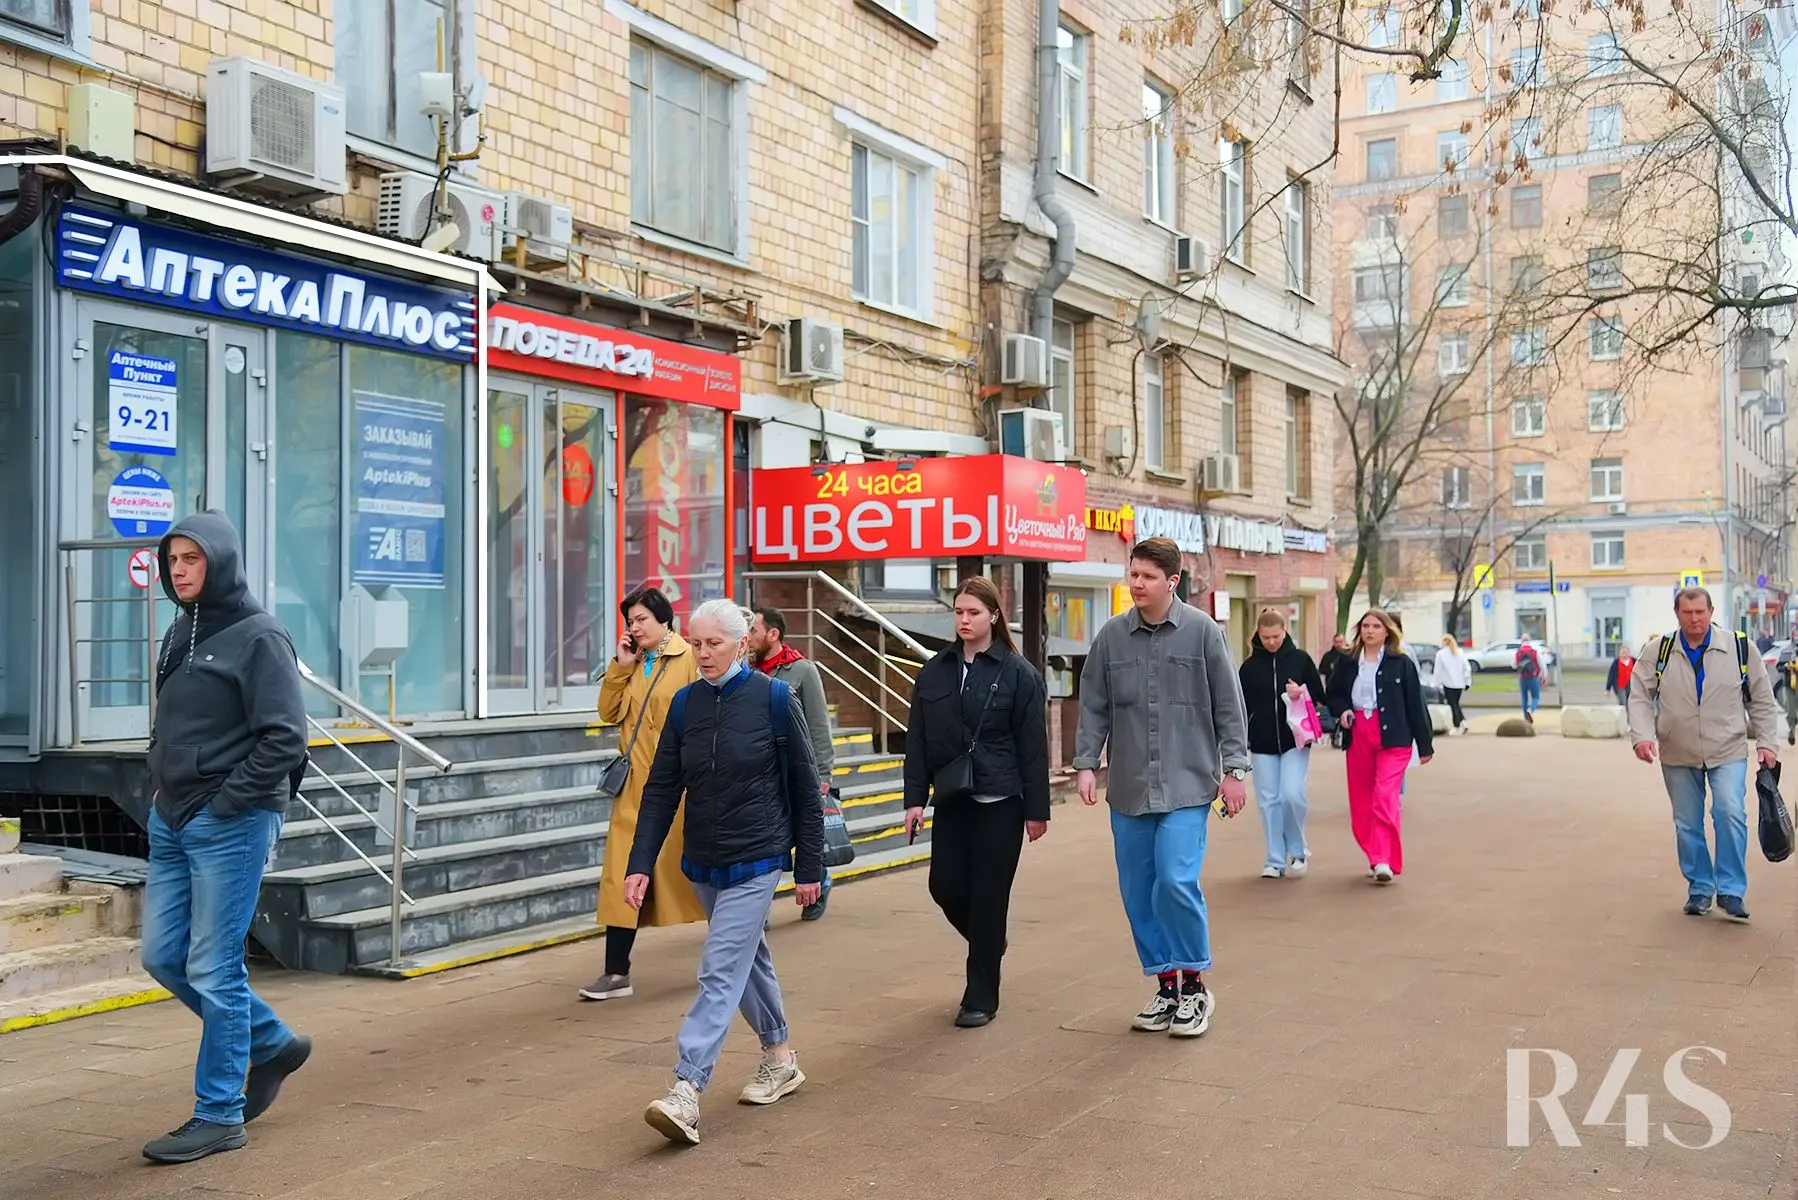 Продажа готового арендного бизнеса площадью 31.6 м2 в Москве: Мастеркова, 3 R4S | Realty4Sale